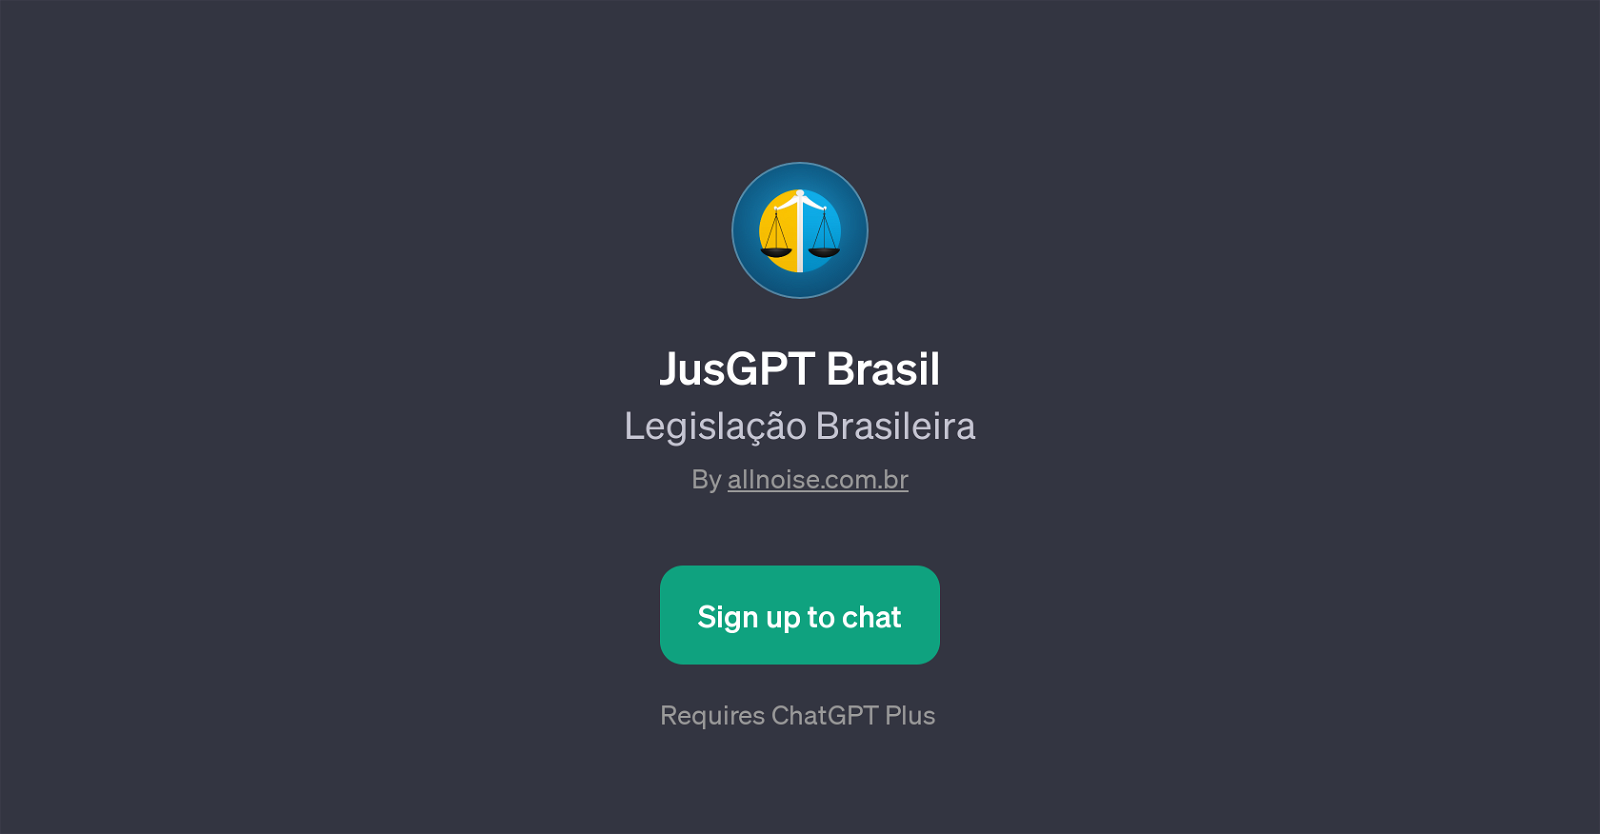 JusGPT Brasil website